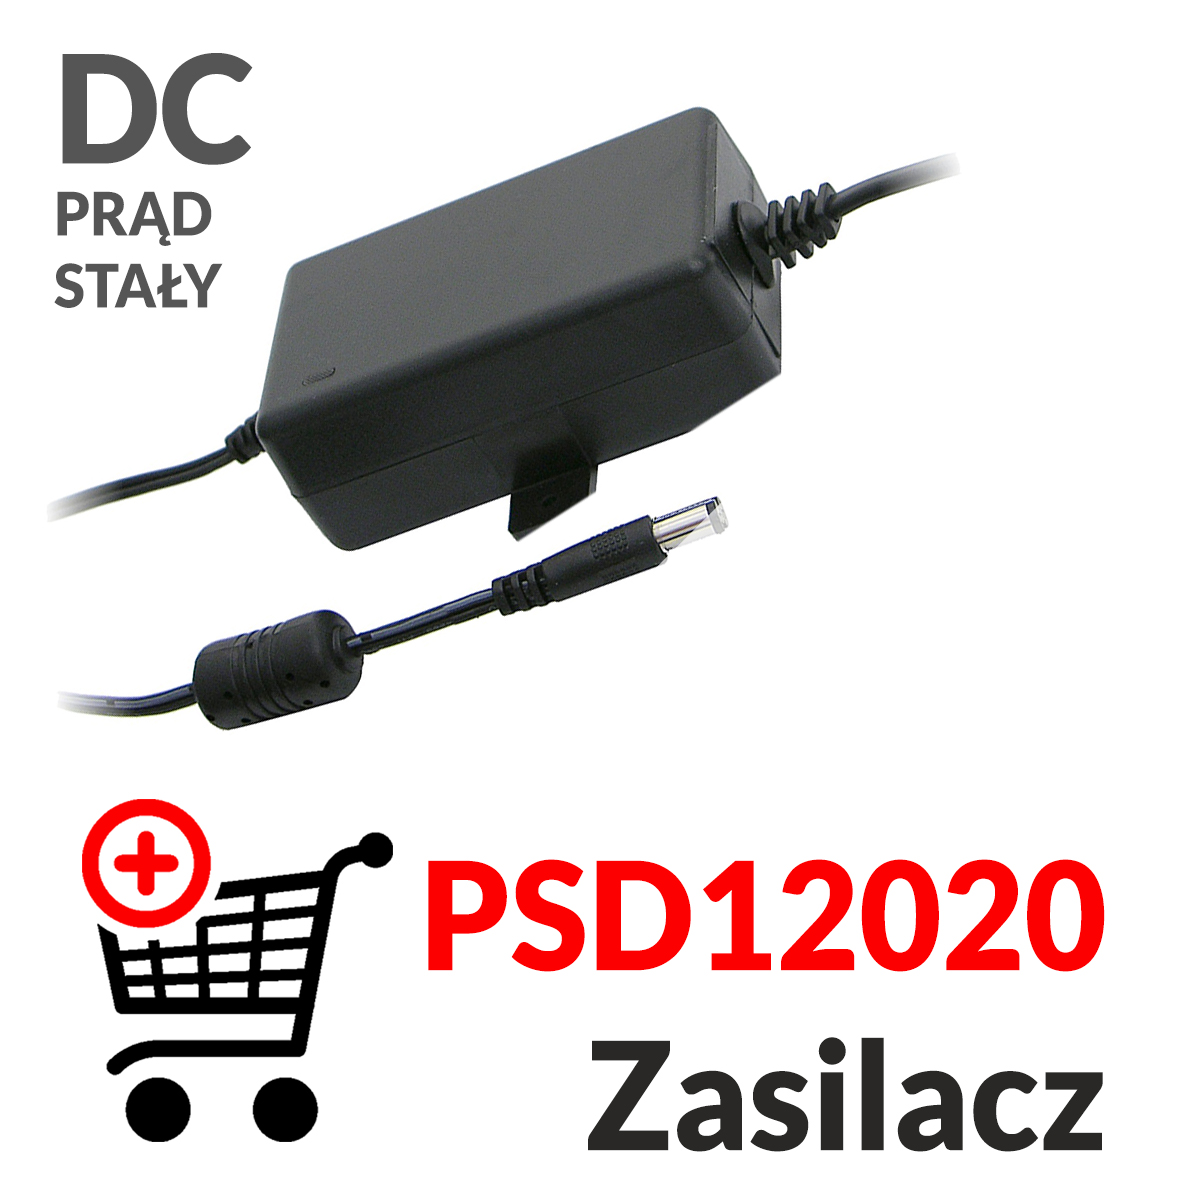 Dodaj do koszyka zasilacz prądu stałego PSD12020